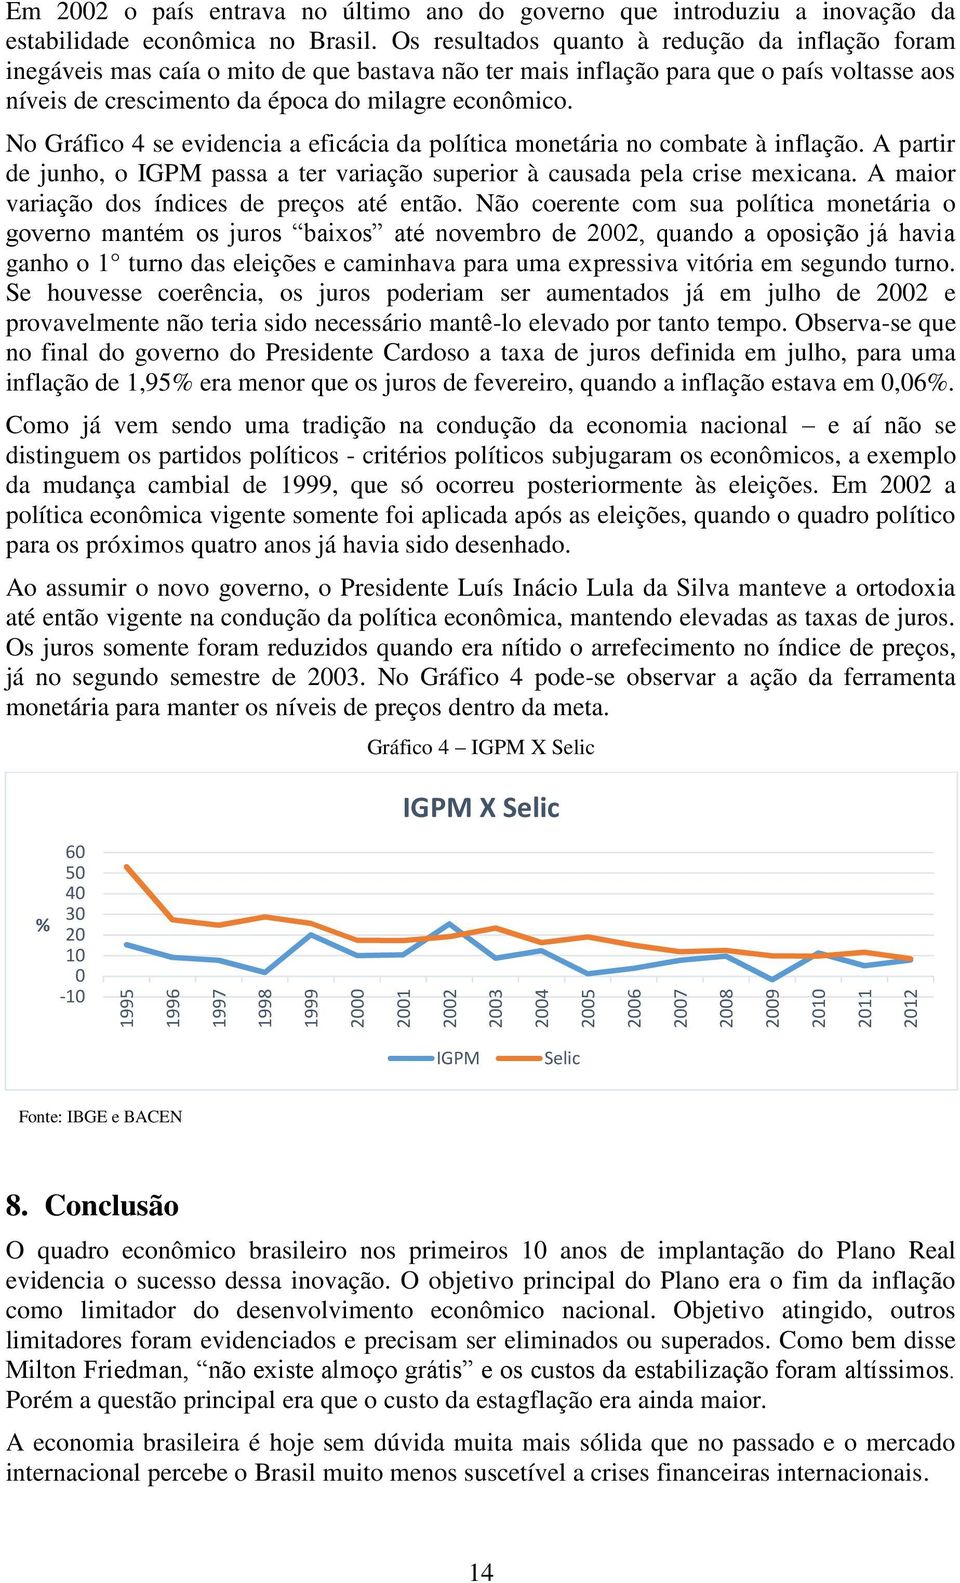 No Gráfico 4 se evidencia a eficácia da política monetária no combate à inflação. A partir de junho, o IGPM passa a ter variação superior à causada pela crise mexicana.